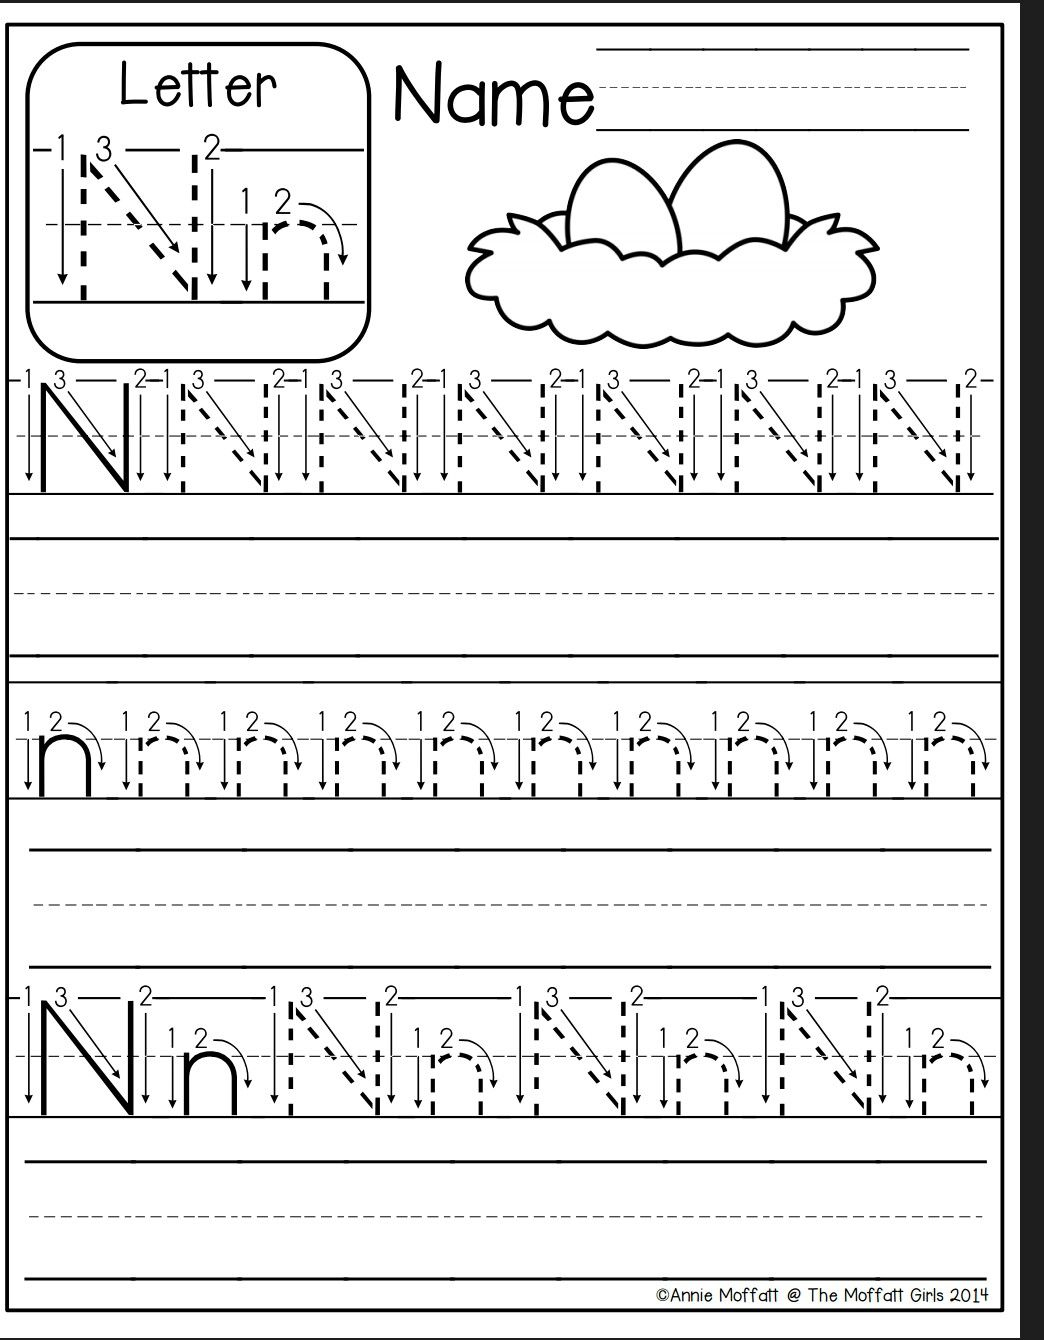 Letter N Worksheet | Letter N Worksheet, Preschool Writing throughout Letter N Worksheets Printable